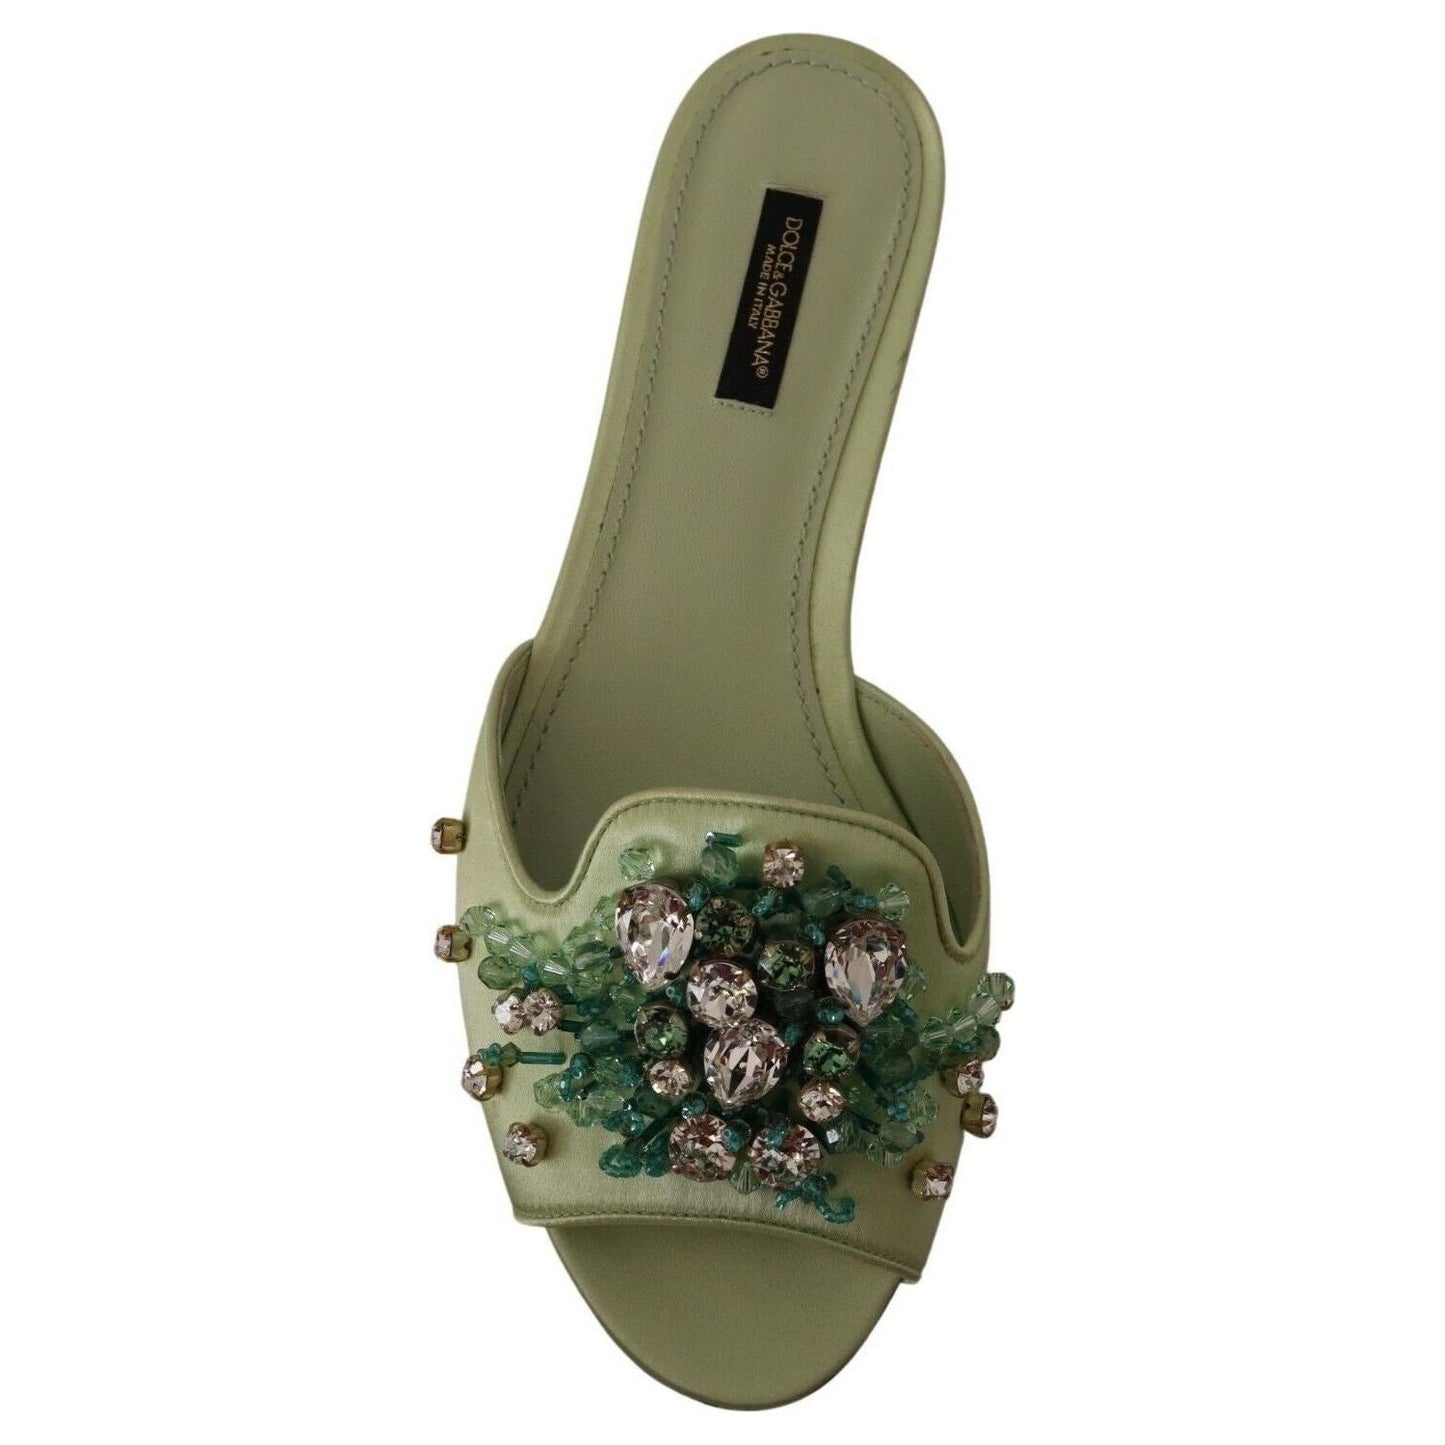 Dolce & Gabbana Elegant Crystal-Embellished Green Leather Slides green-leather-crystals-slides-women-flats-shoes s-l1600-6-25-1320e1a0-08e_2e1f80b6-3c27-4e91-b084-0b493d275c4f.jpg